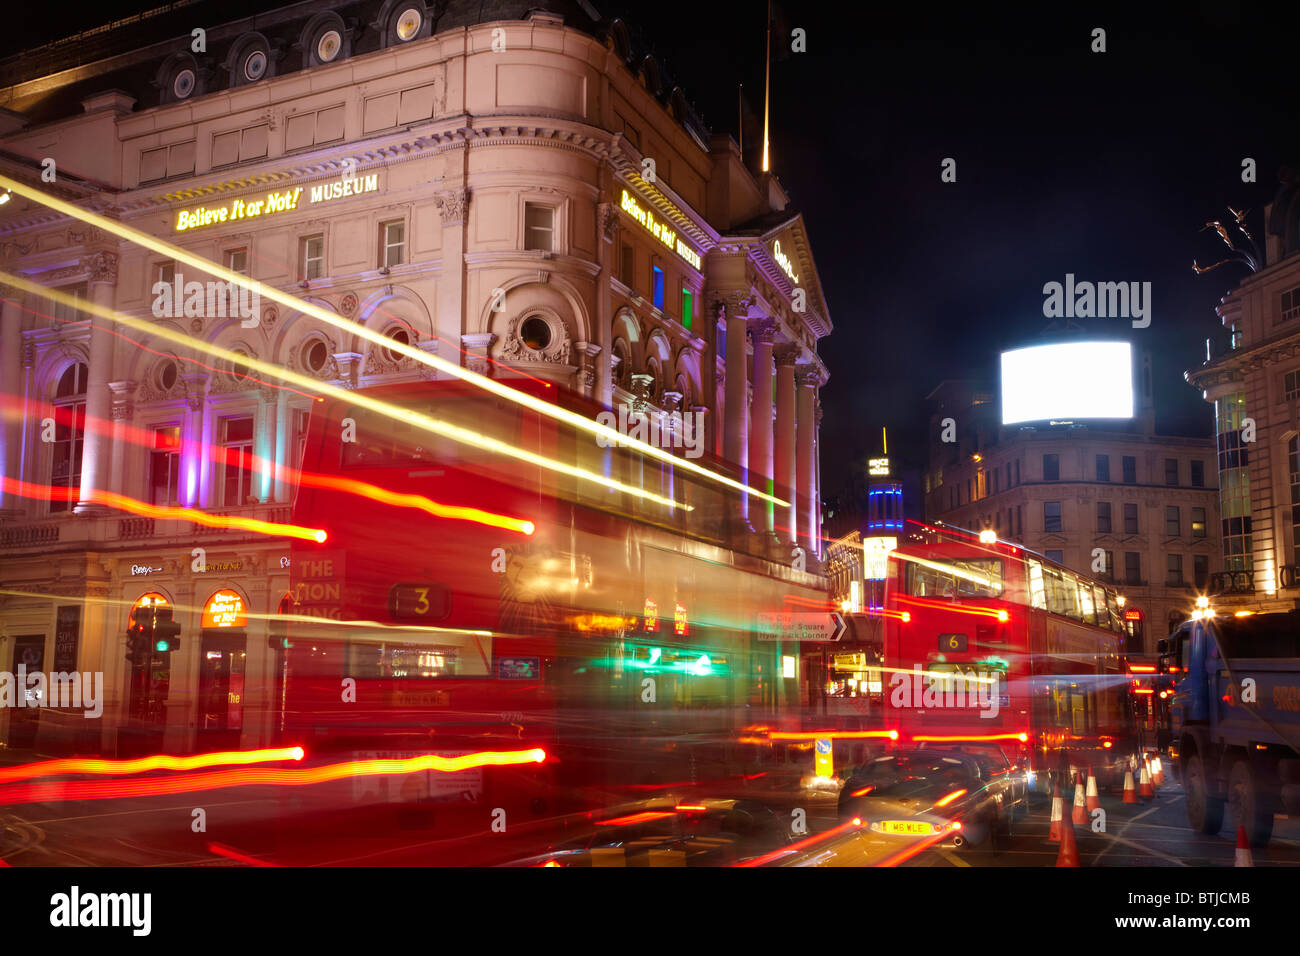 Le London Pavilion et du trafic nocturne, Piccadilly Circus, Londres, Angleterre, Royaume-Uni Banque D'Images